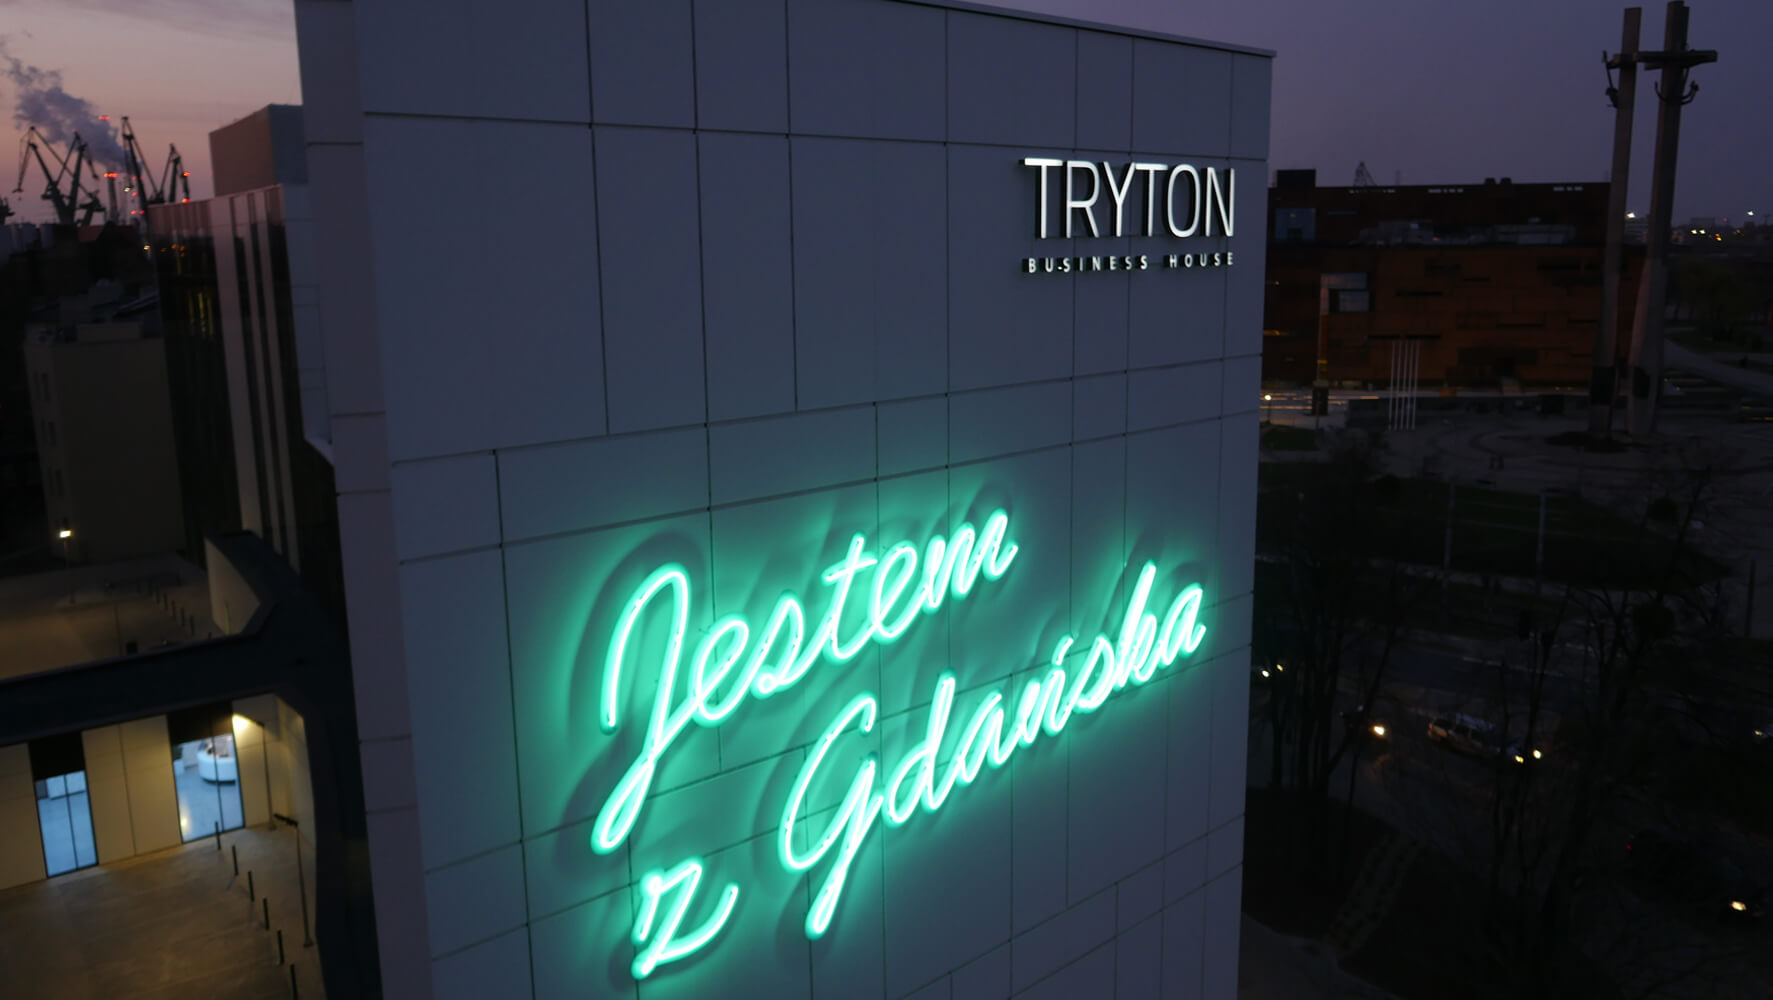 Tryton - Tryton - napis "jestem z Gdańska" utworzony z neonów, umieszczony na elewacji